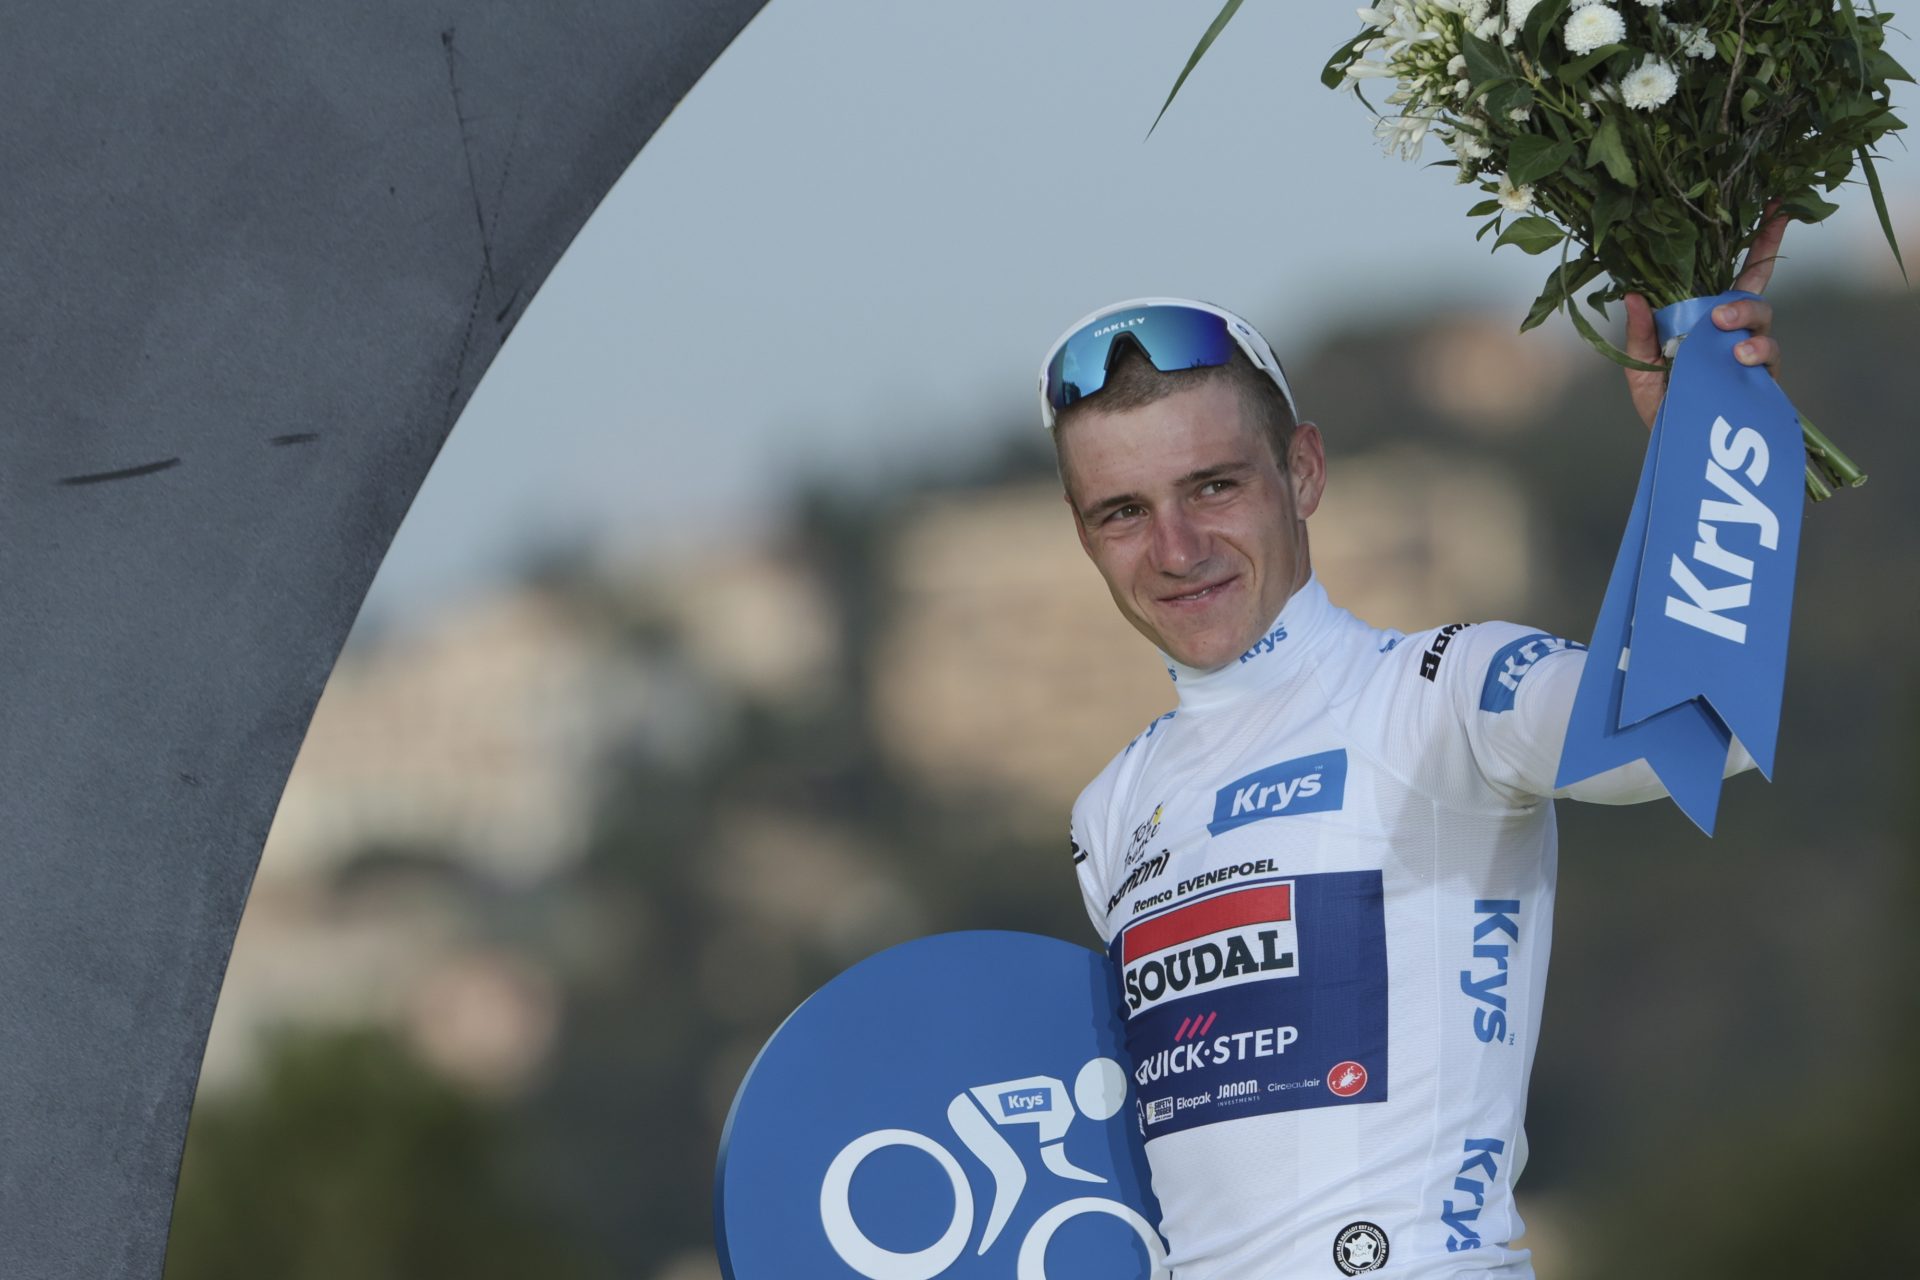 Will Remco Evenepoel ever win the Tour de France?